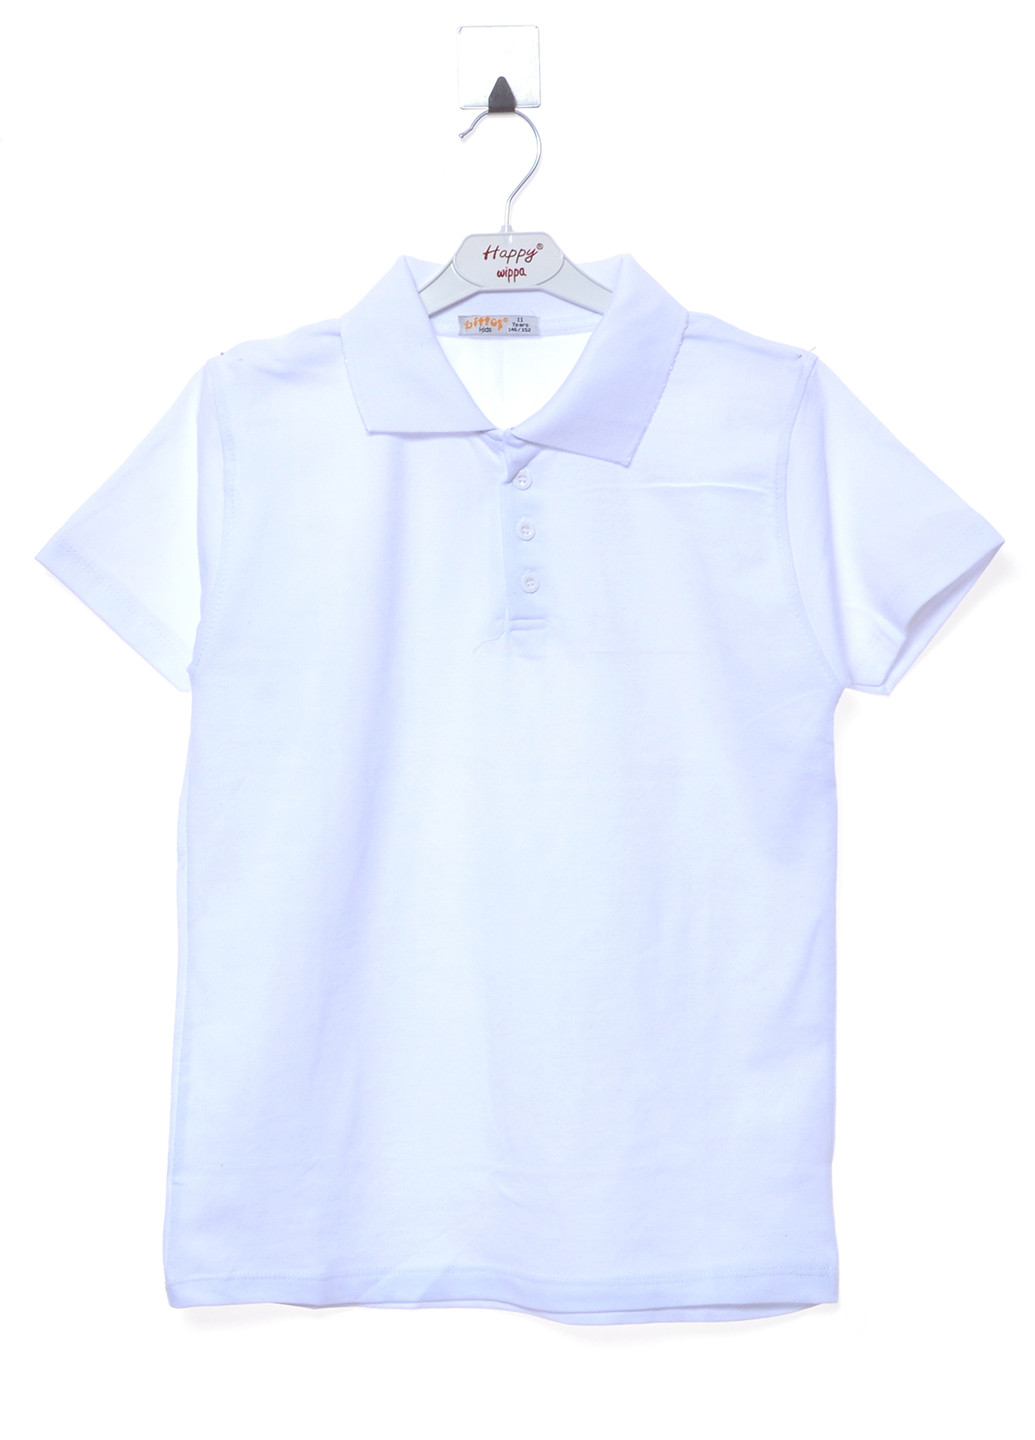 Белая детская футболка-поло для мальчика Bittos однотонная